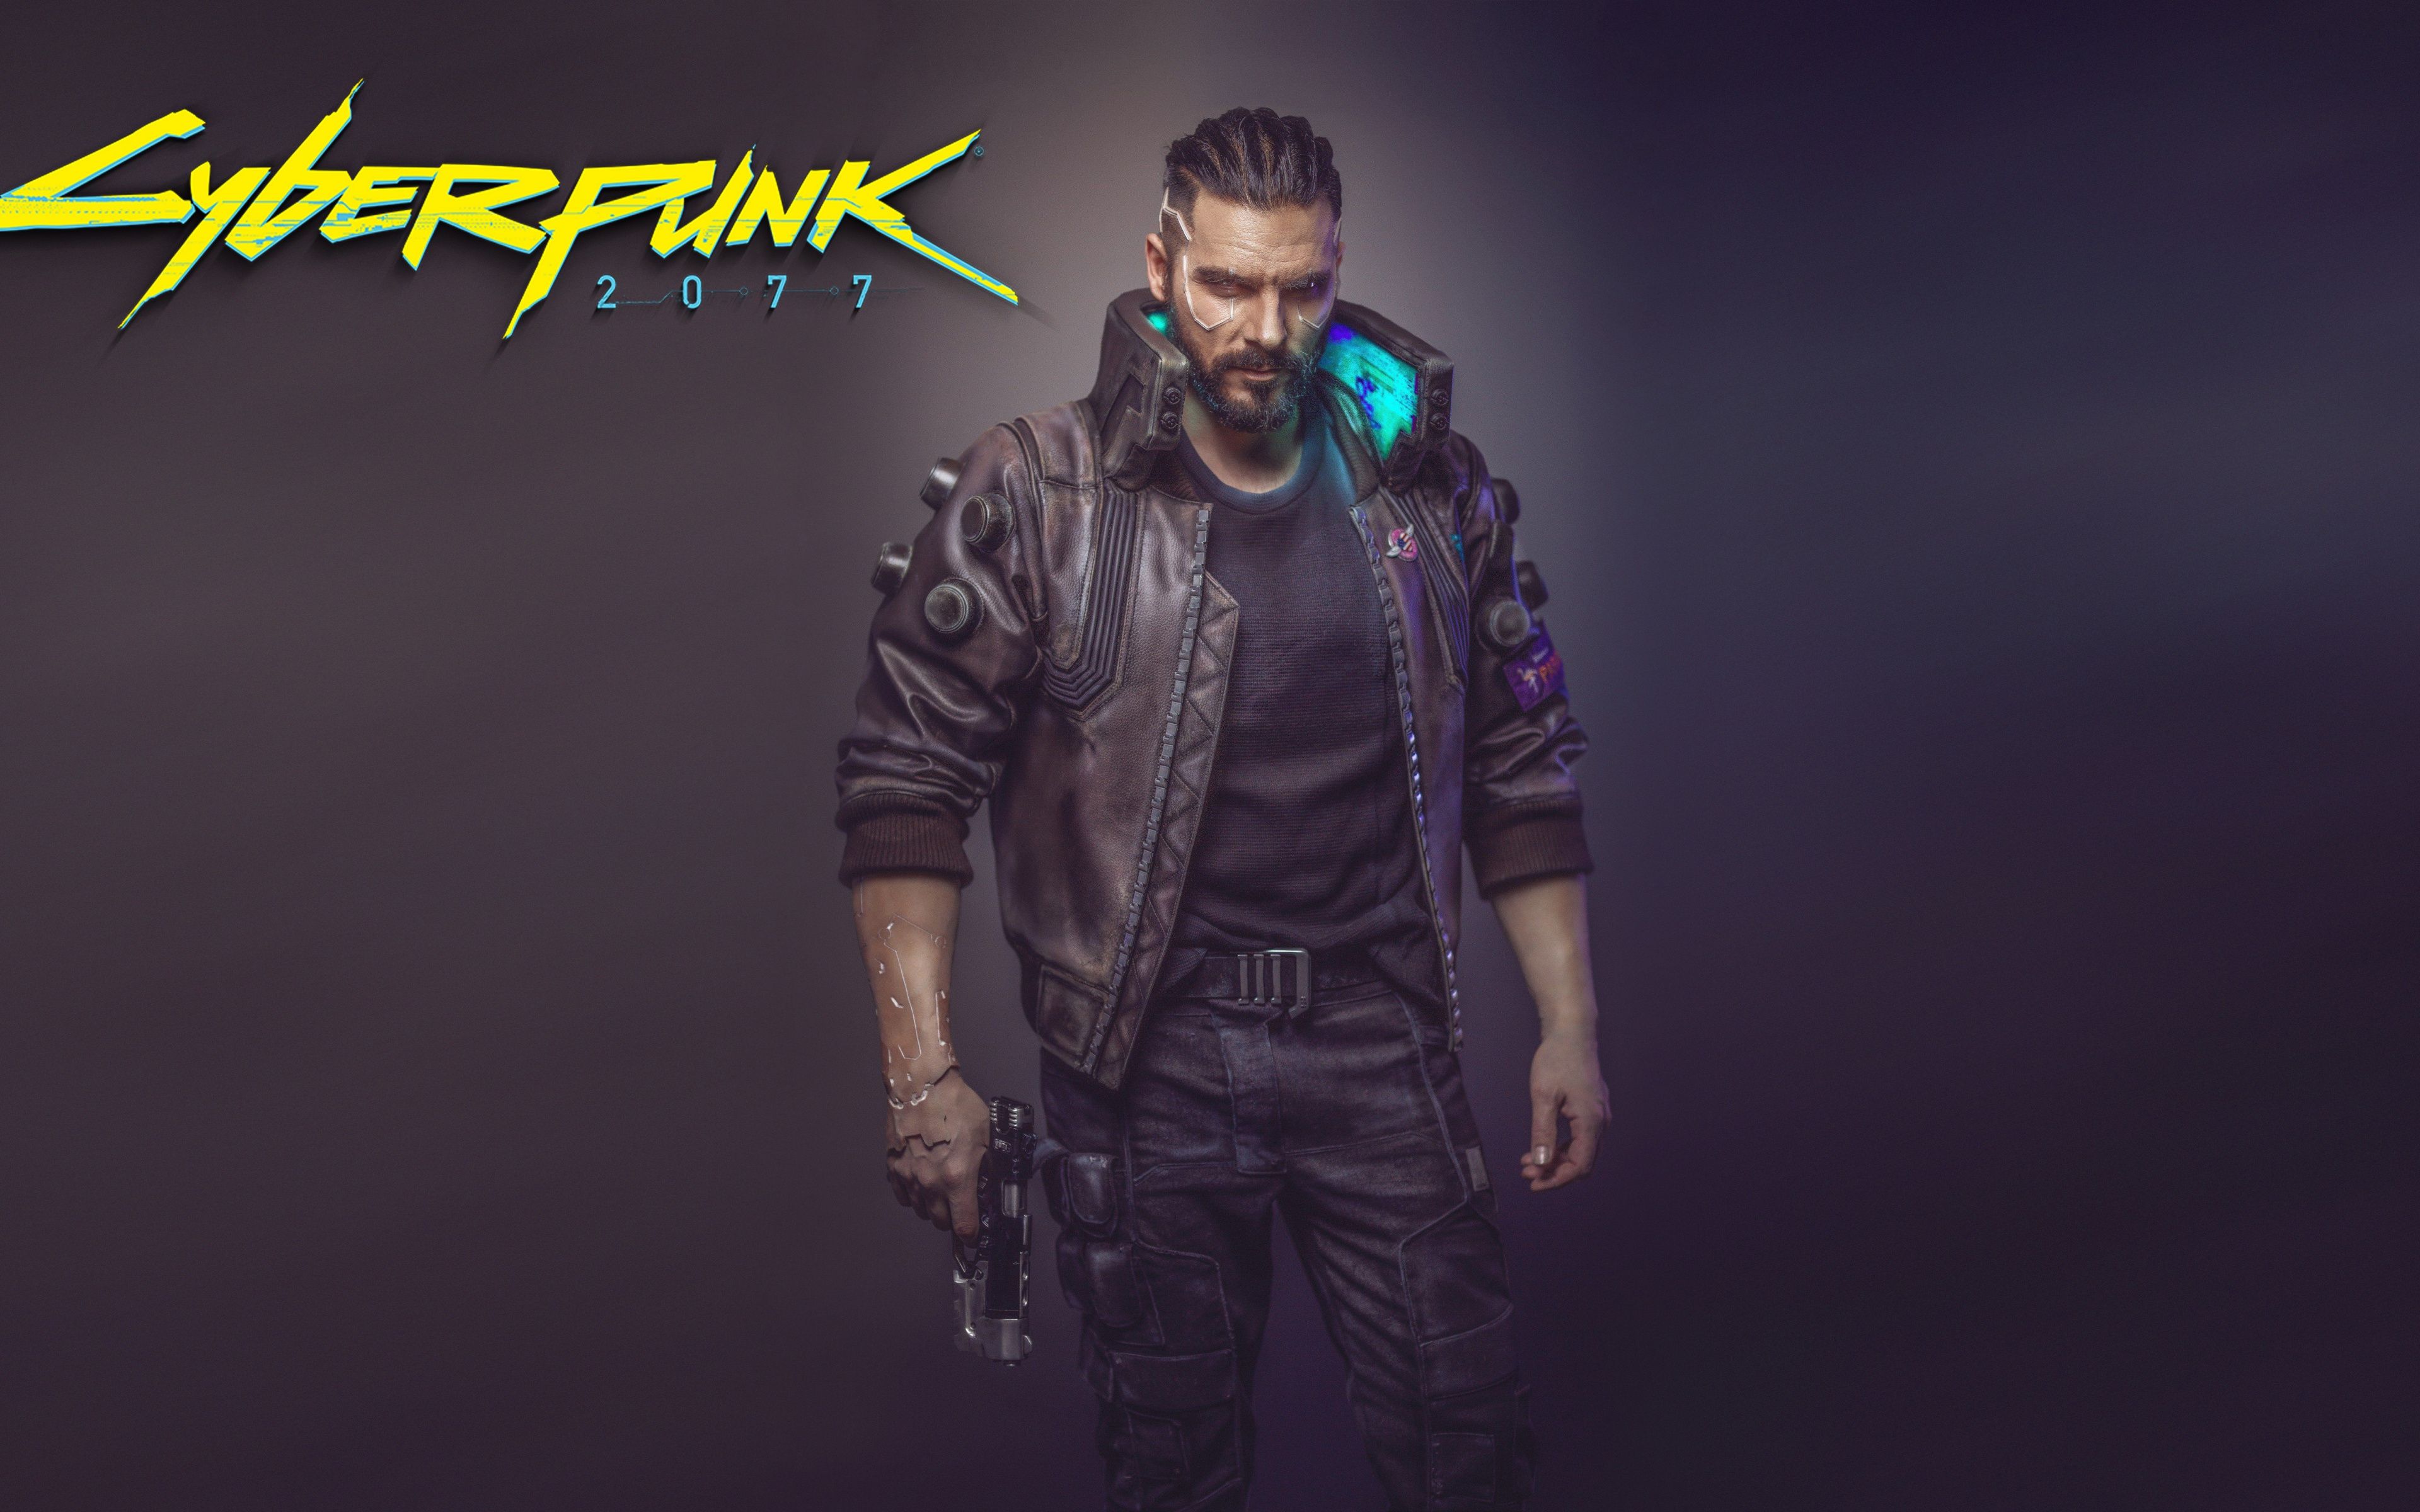 cyberpunk 2077 man with gun 2018 Wallpaper Download